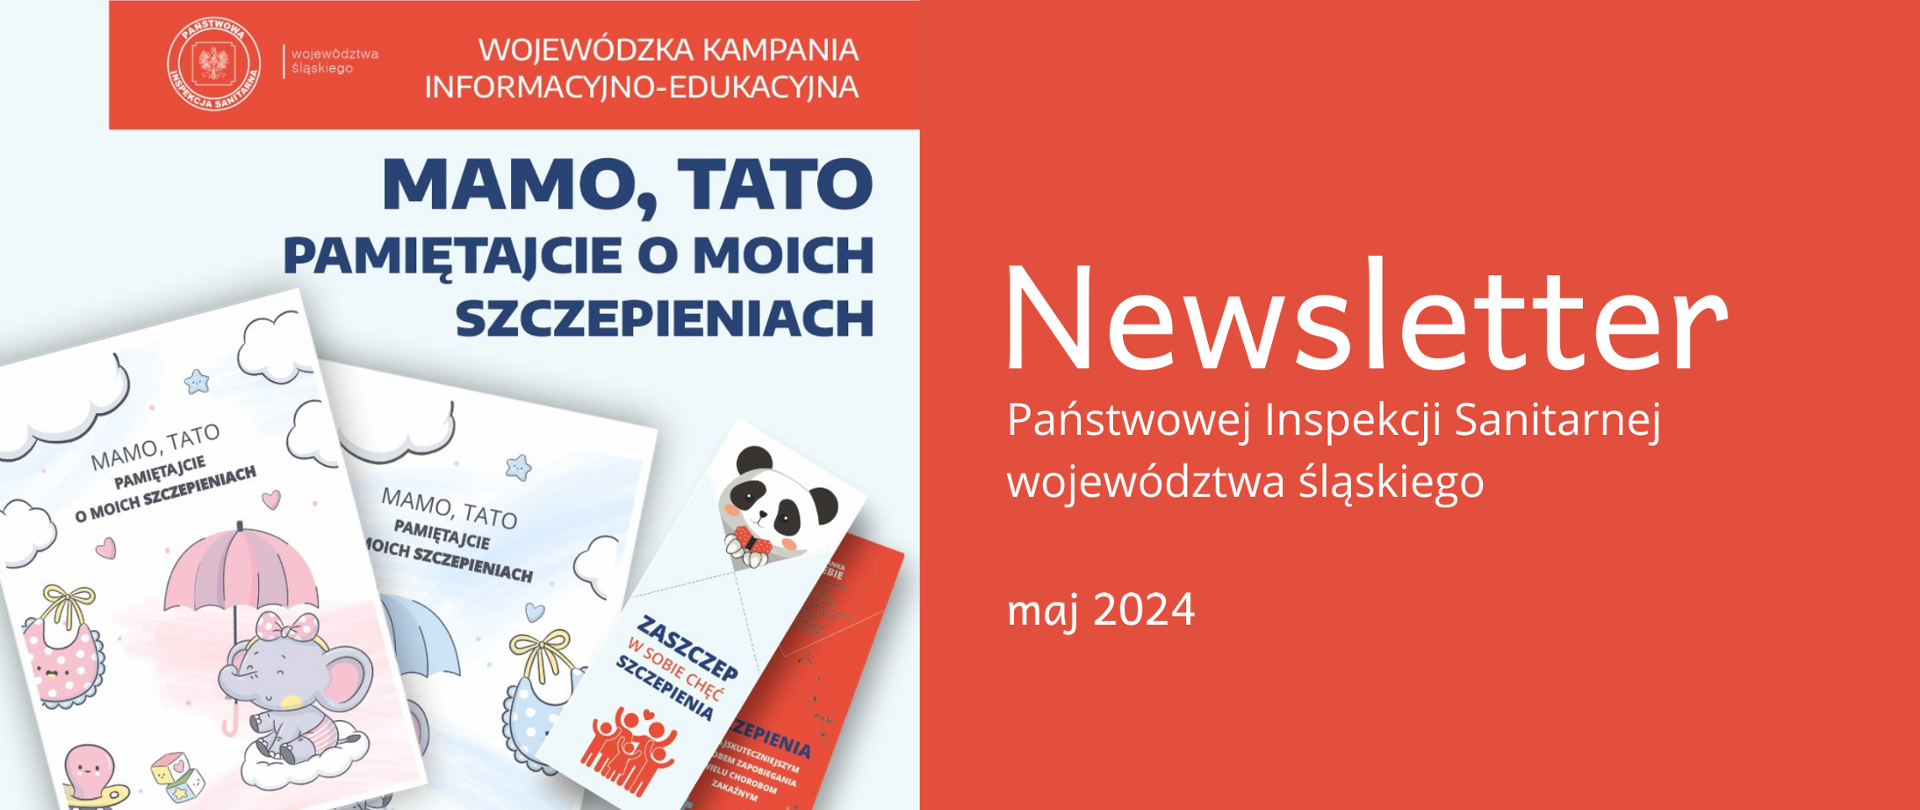 Po prawej stronie materiały edukacyjne Wojewódzkiej Kampanii informacyjno-edukacyjne "Mamo, Tato pamiętajcie o moich szczepieniach", po lewej napis Państwowej Inspekcji Sanitarnej województwa śląskiego za maj 2024 